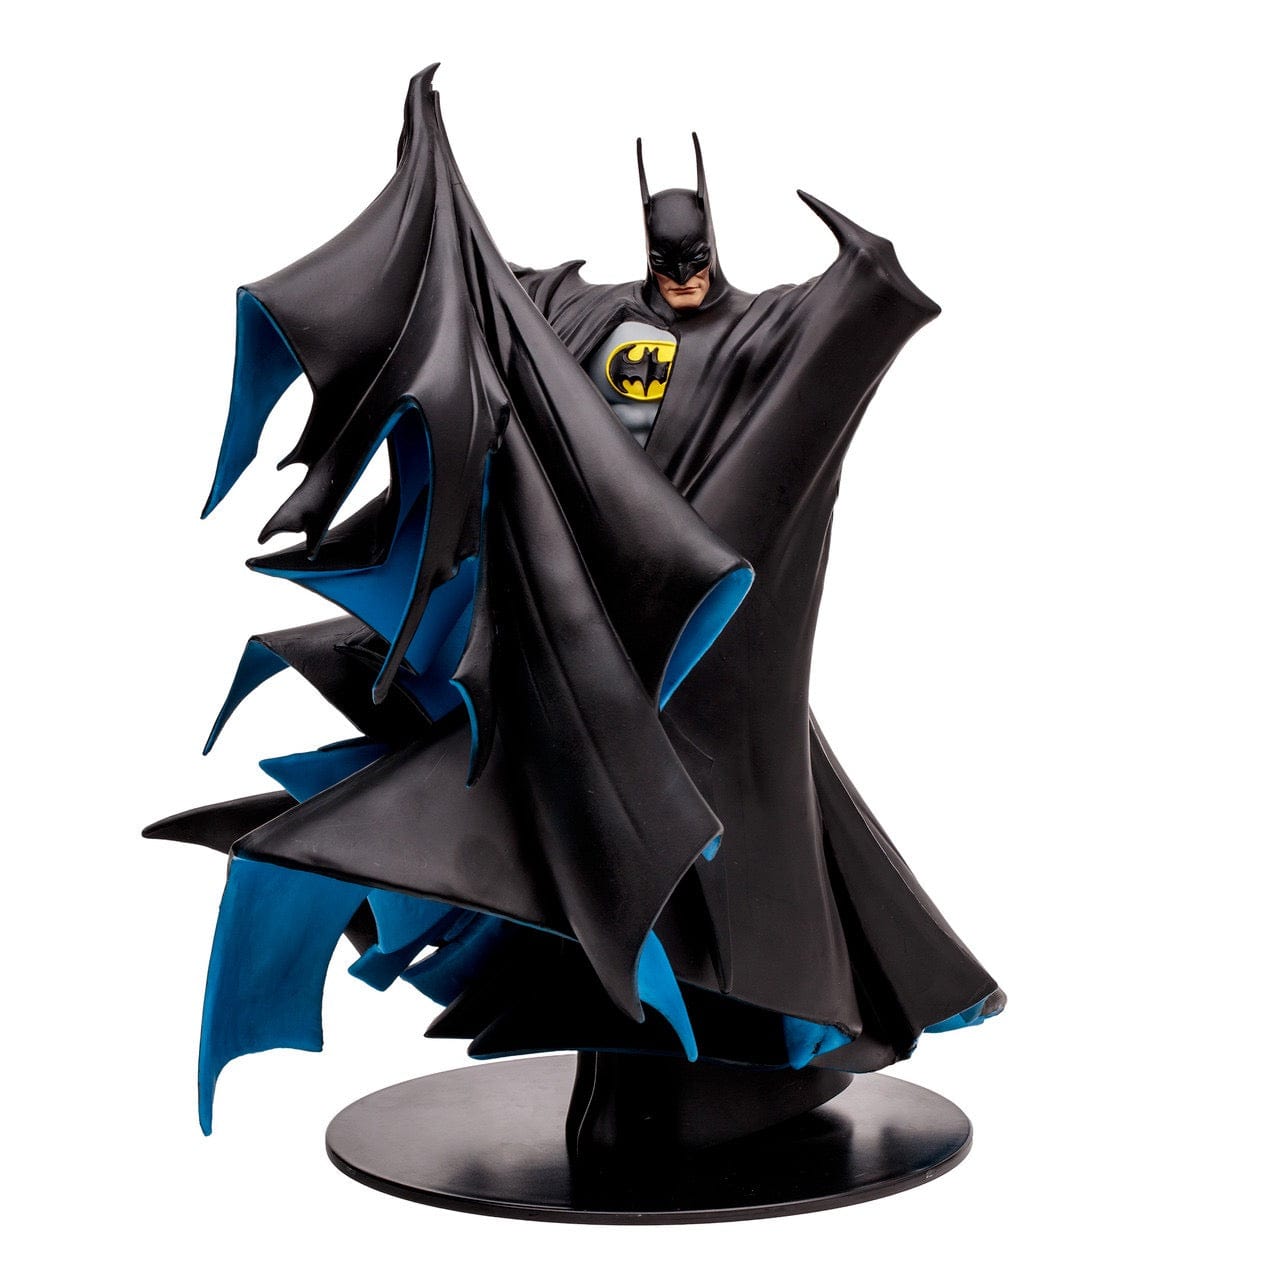 McFarlane Toys DC Direct Batman by Todd McFarlane 1:8 Scale Statue (Black)